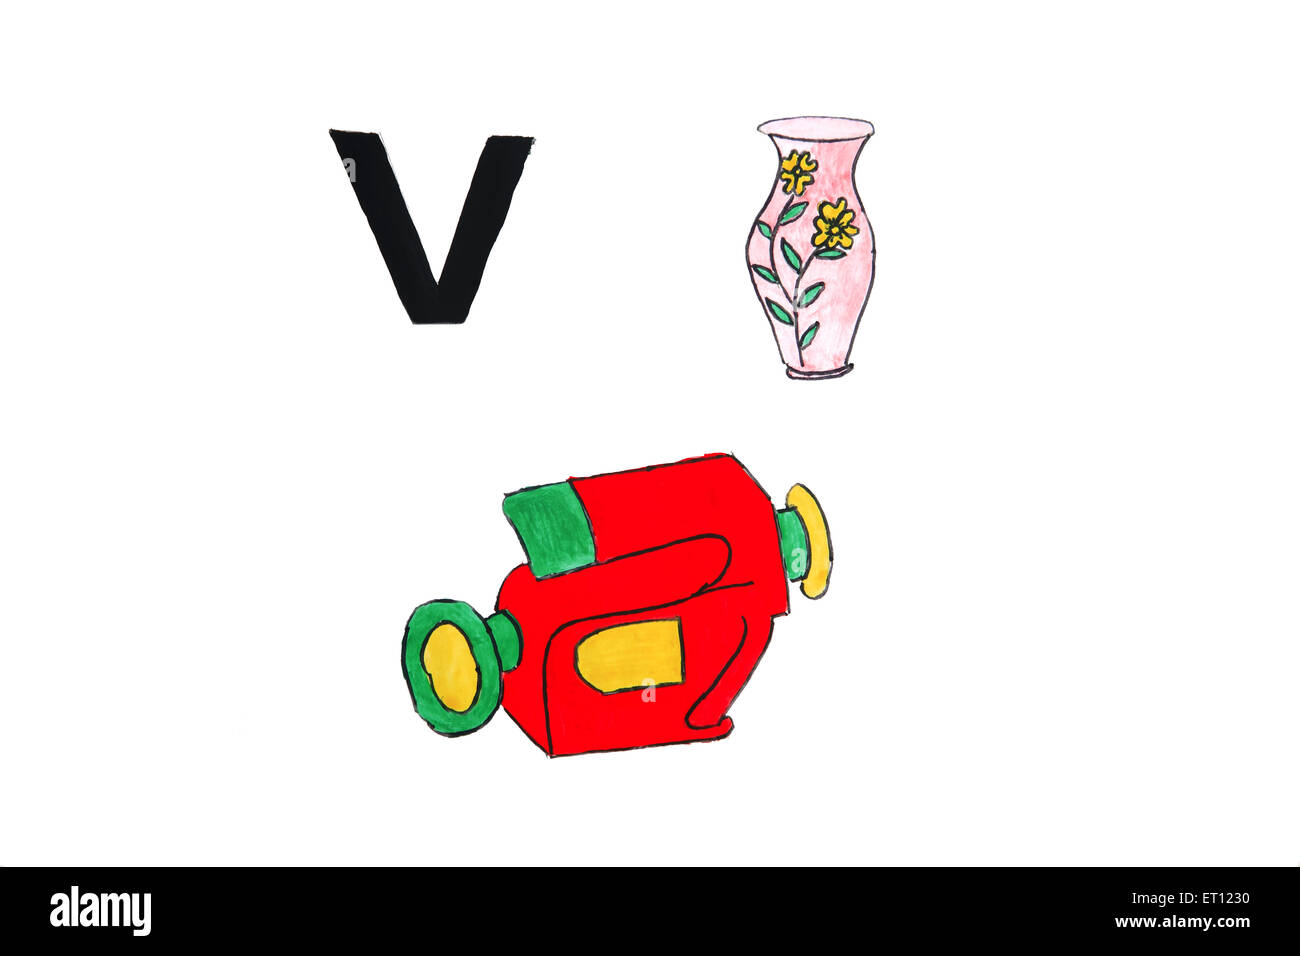 v für Schiff, V für Vase, V für Videokamera Stockfoto